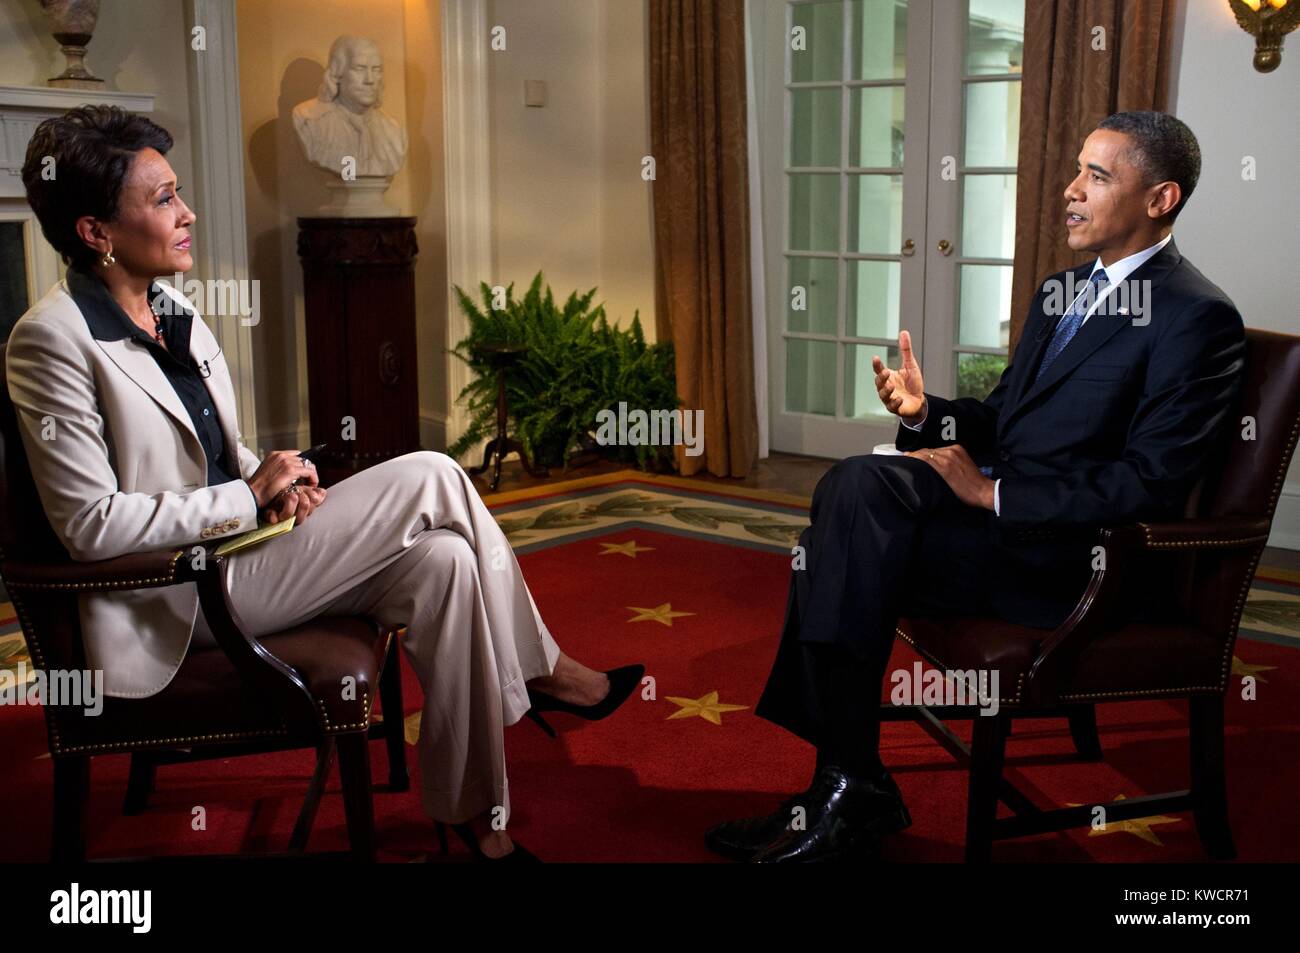 Präsident Barack Obama von Robin Roberts von ABC's "Good Morning America" TV-Show interviewt. Schaltschrank des Weißen Hauses, 9. Mai 2012. (BSLOC 2015 3 104) Stockfoto